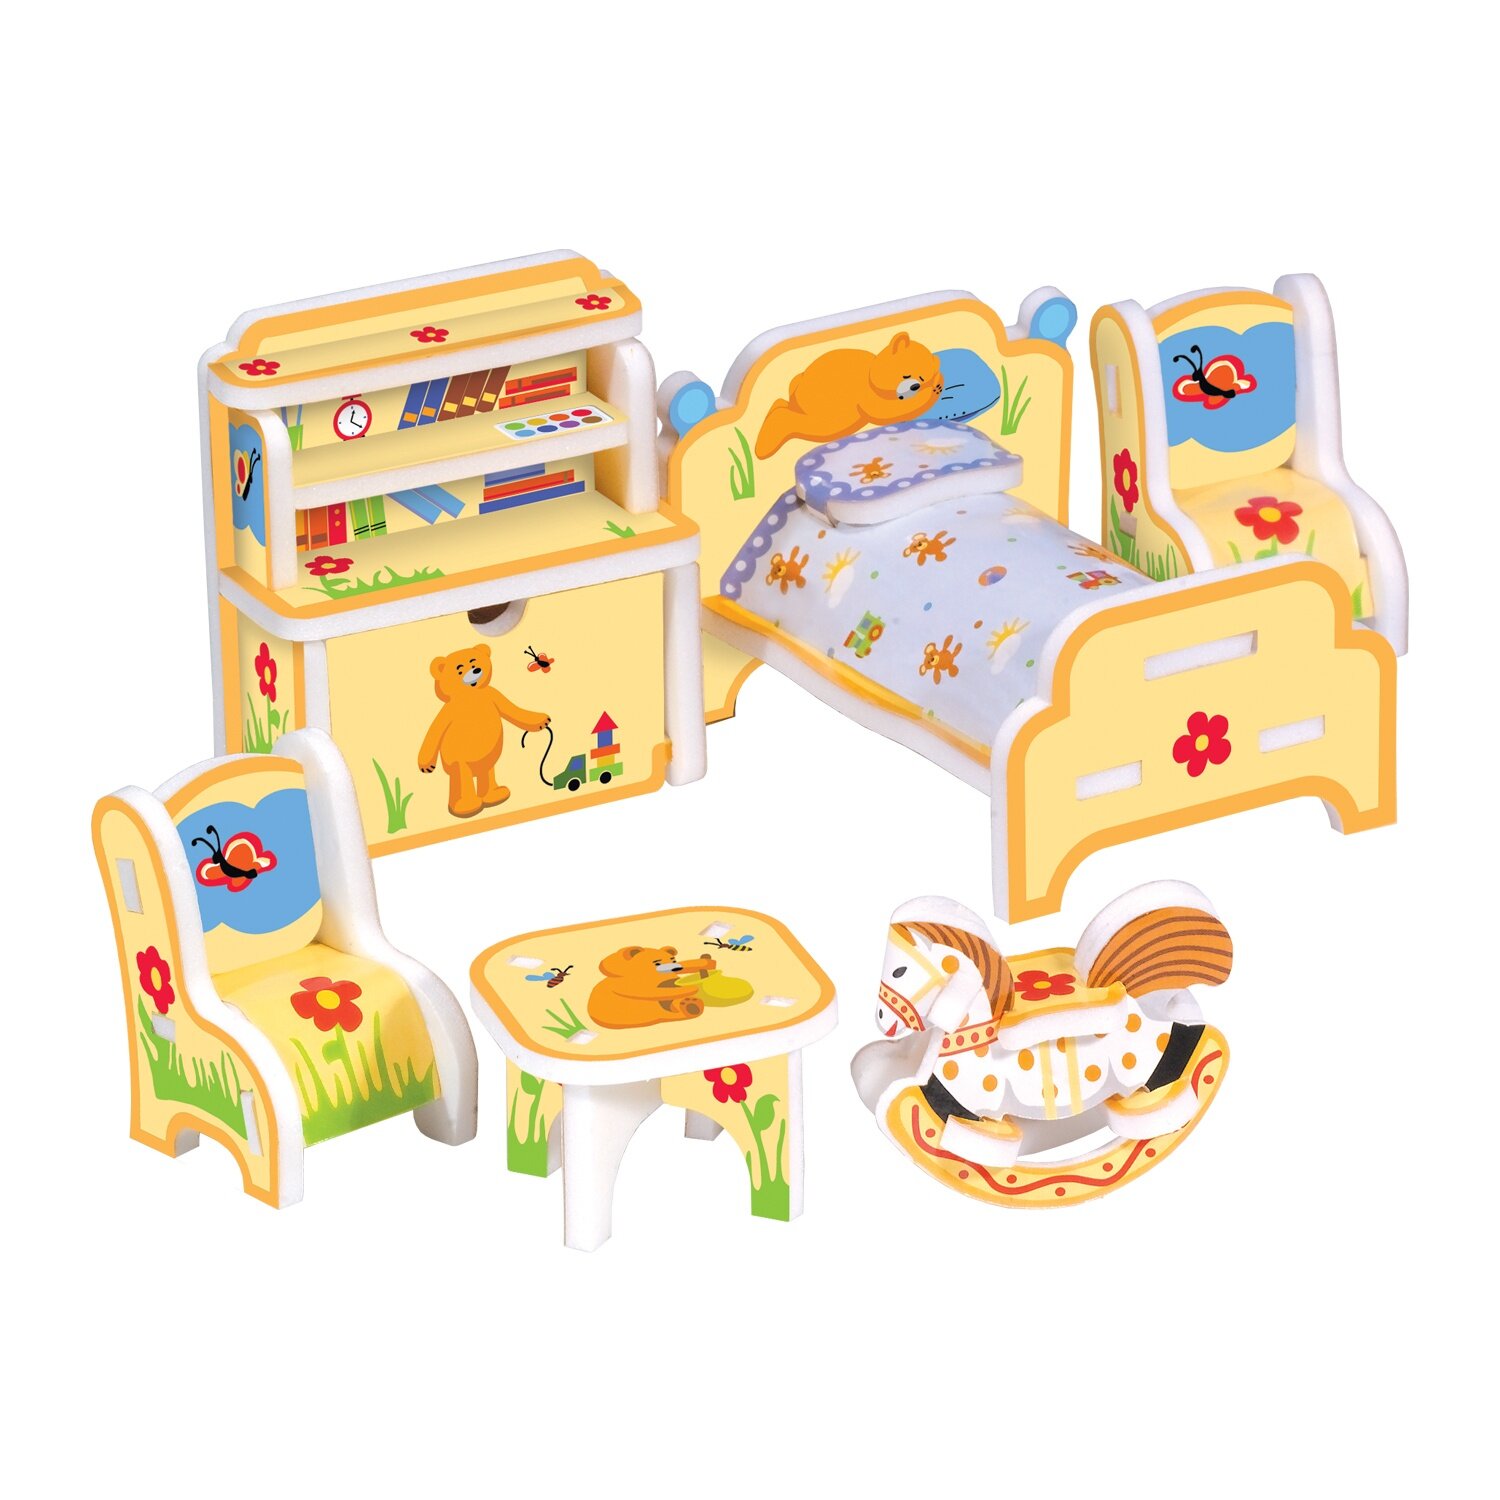 Пазл Умная Бумага "Детская мебель", объемный, сборная игрушка, картон, изолон, мини